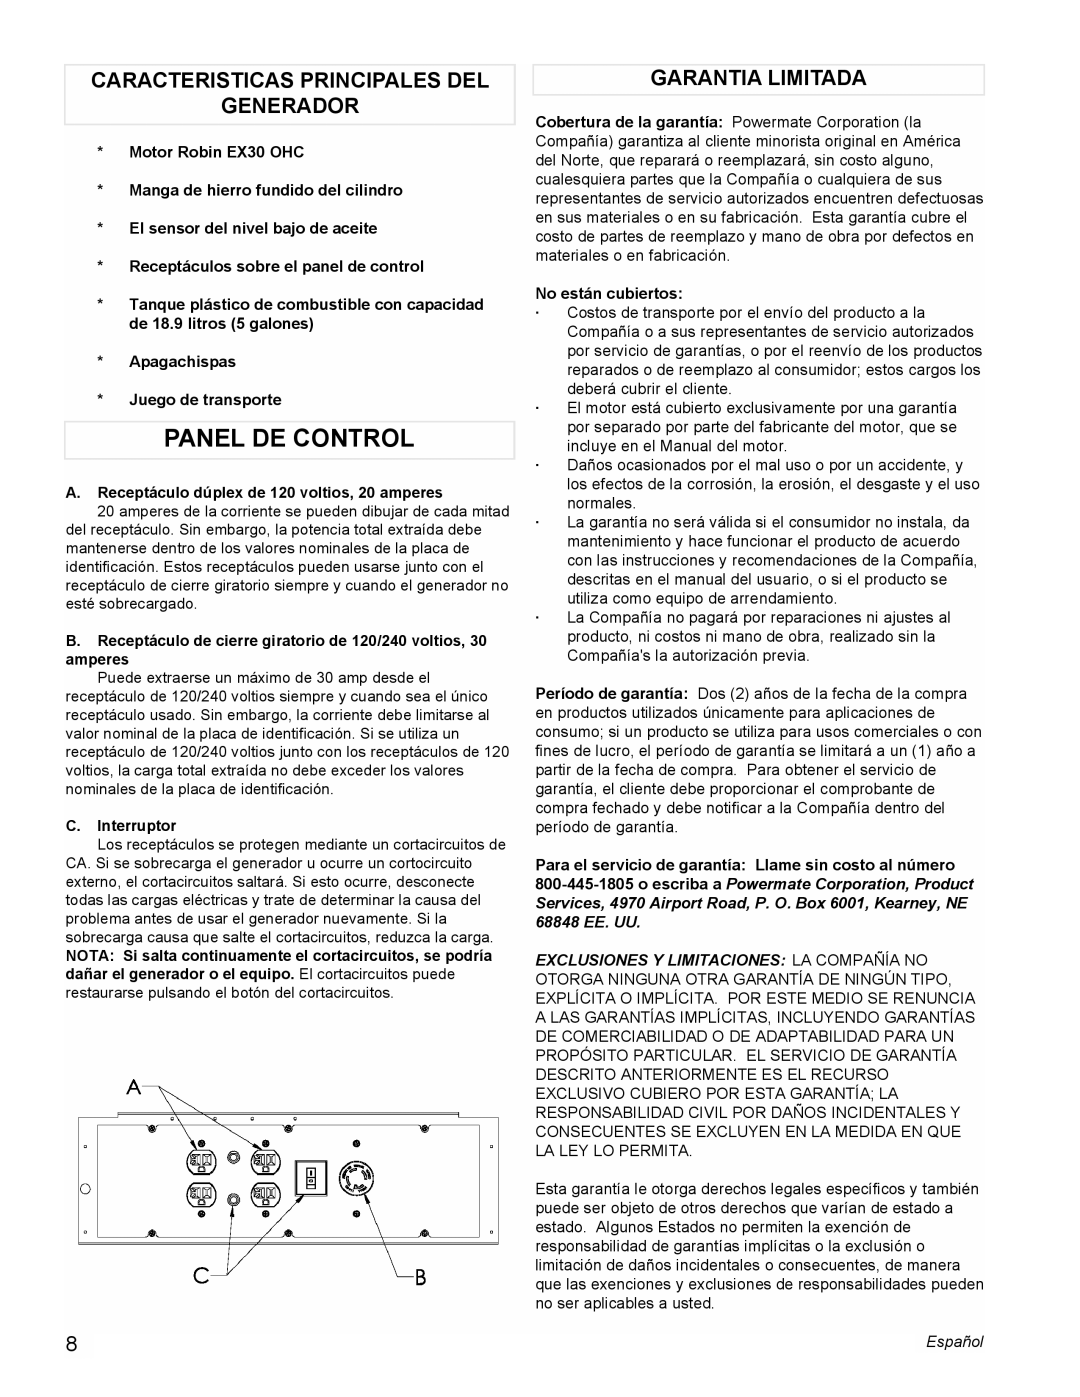 Powermate PMC435250 manual Panel De Control, Caracteristicas Principales Del Generador, Garantia Limitada 